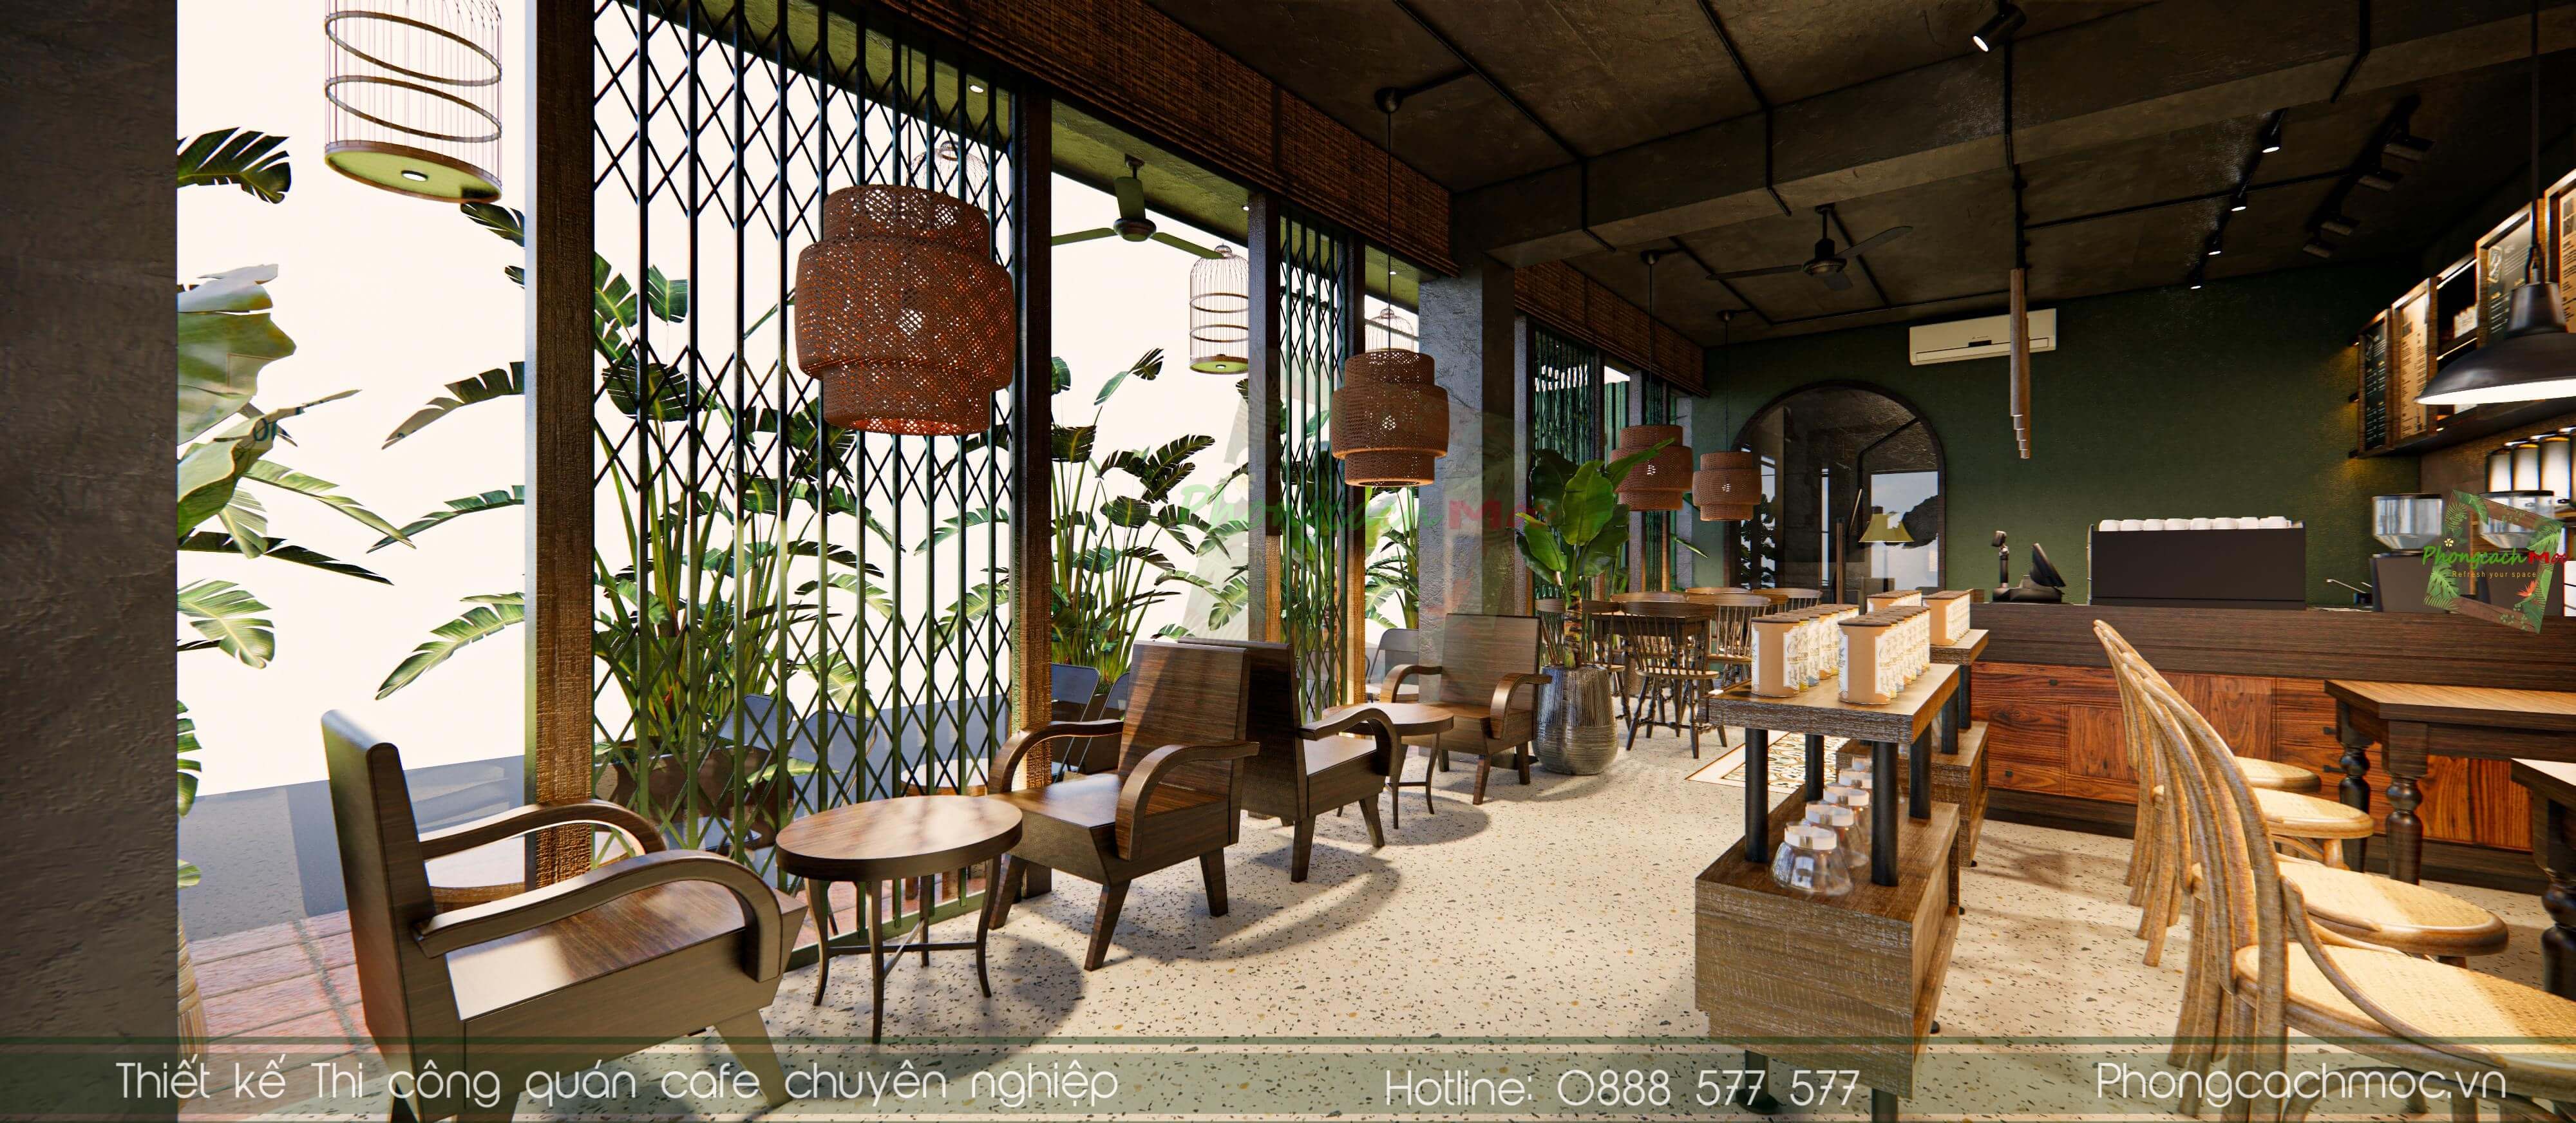 Thiết kế quán cafe Indochine: Với thiết kế quán cafe Indochine, bạn sẽ được đưa đến những không gian ấn tượng và lôi cuốn với sự kết hợp hoàn hảo giữa phong cách đồng quê Việt Nam và phong cách cổ điển Pháp. Bạn sẽ được trải nghiệm không gian yên tĩnh, tinh tế và đầy sức hút khi tận hưởng ly cafe thơm ngon.